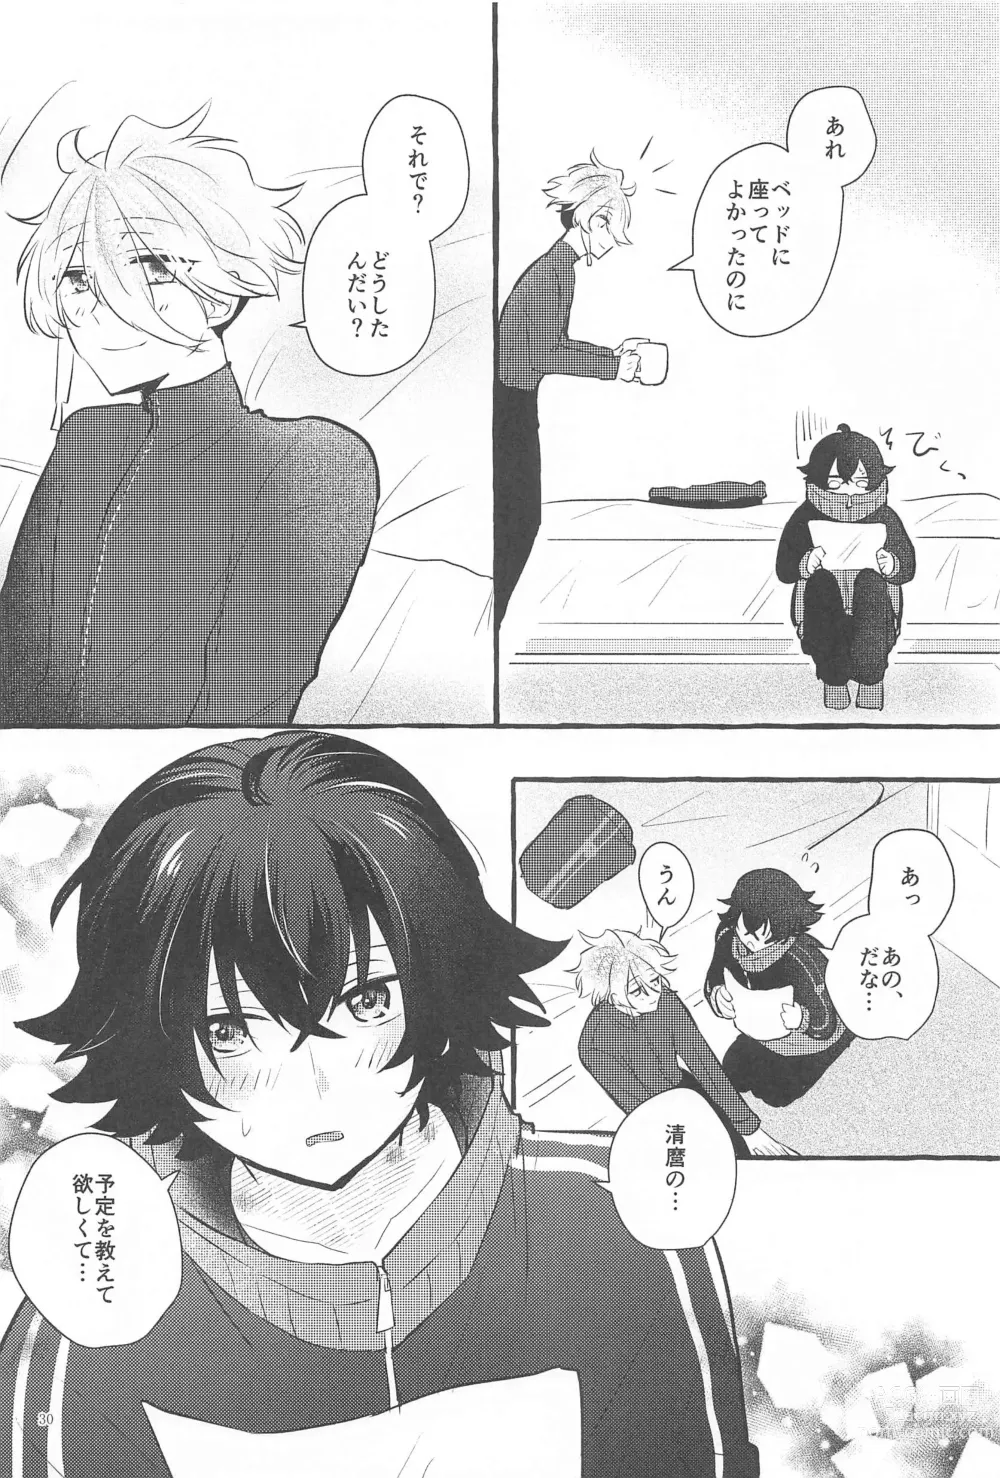 Page 29 of doujinshi Kanete kara no Setsubou de